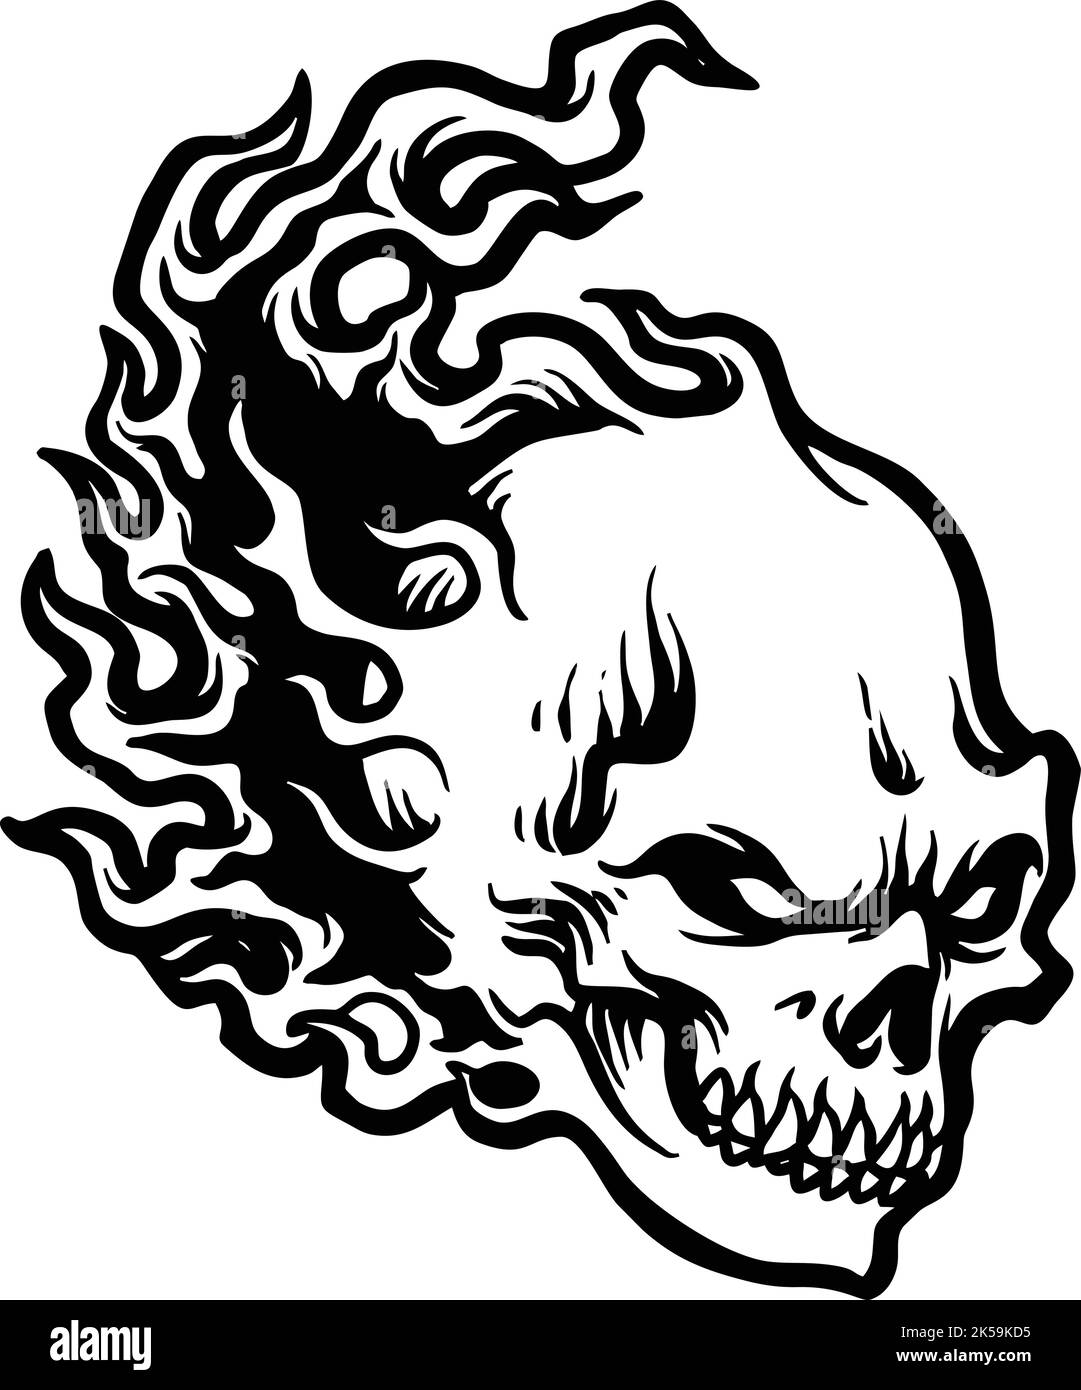 Fire Skull dessin Flames illustrations vectorielles pour votre travail logo, t-shirt de marchandise de mascotte, autocollants et dessins d'étiquettes, affiche, cartes de vœux Illustration de Vecteur